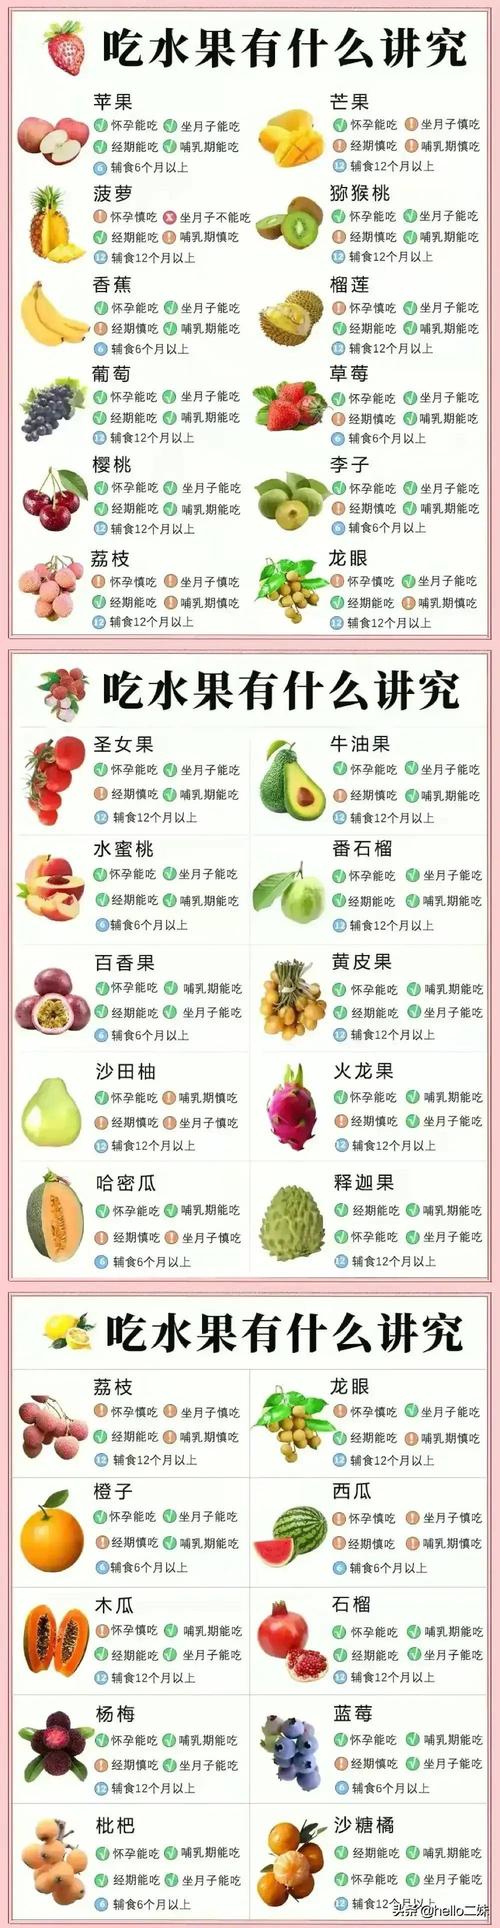 水果的种类的相关图片